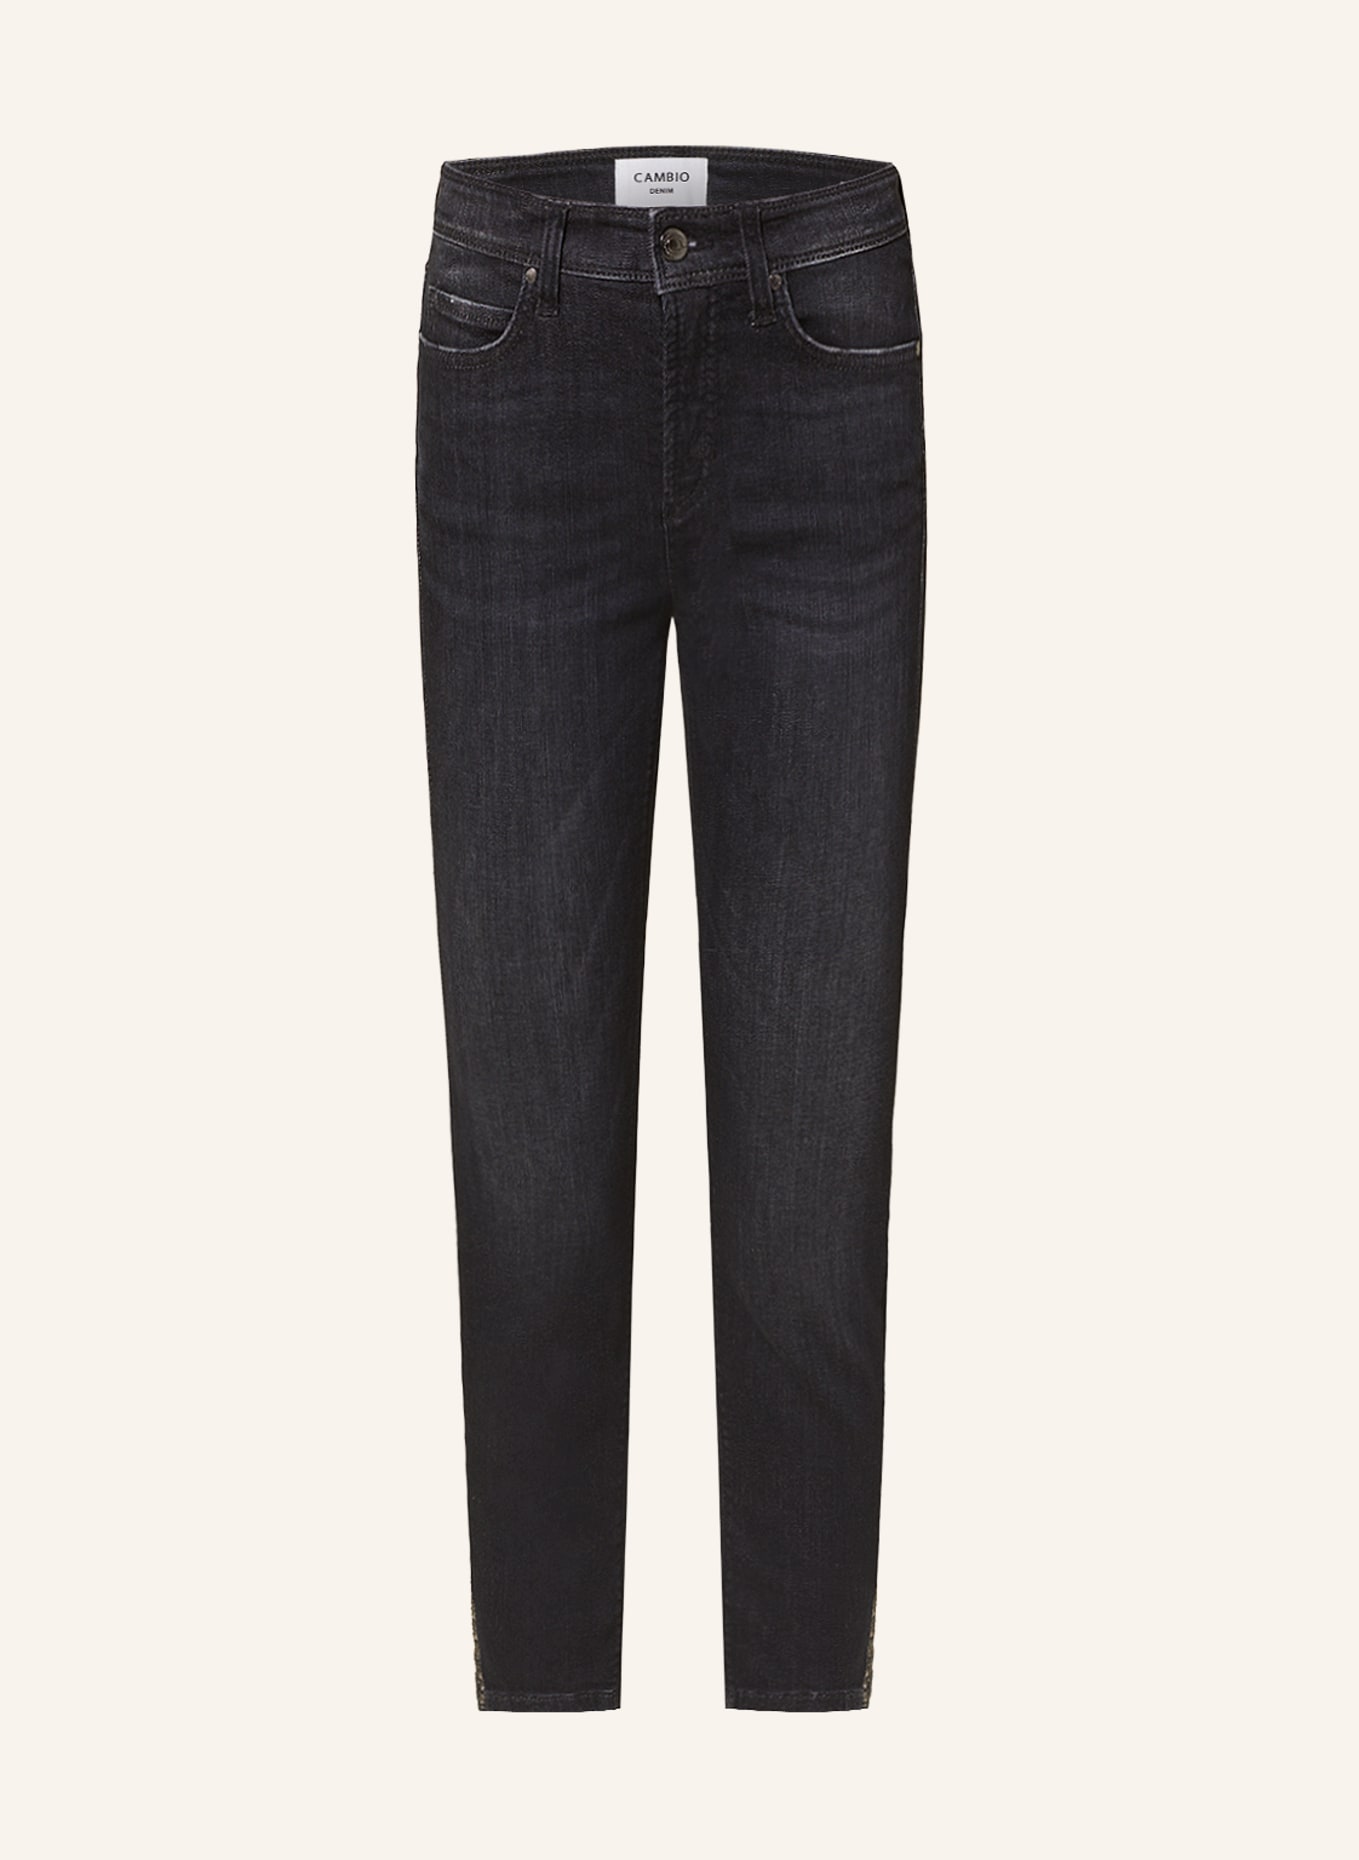 CAMBIO 7/8-Jeans PIPER mit Schmucksteinen, Farbe: 5220 modern authentic black (Bild 1)